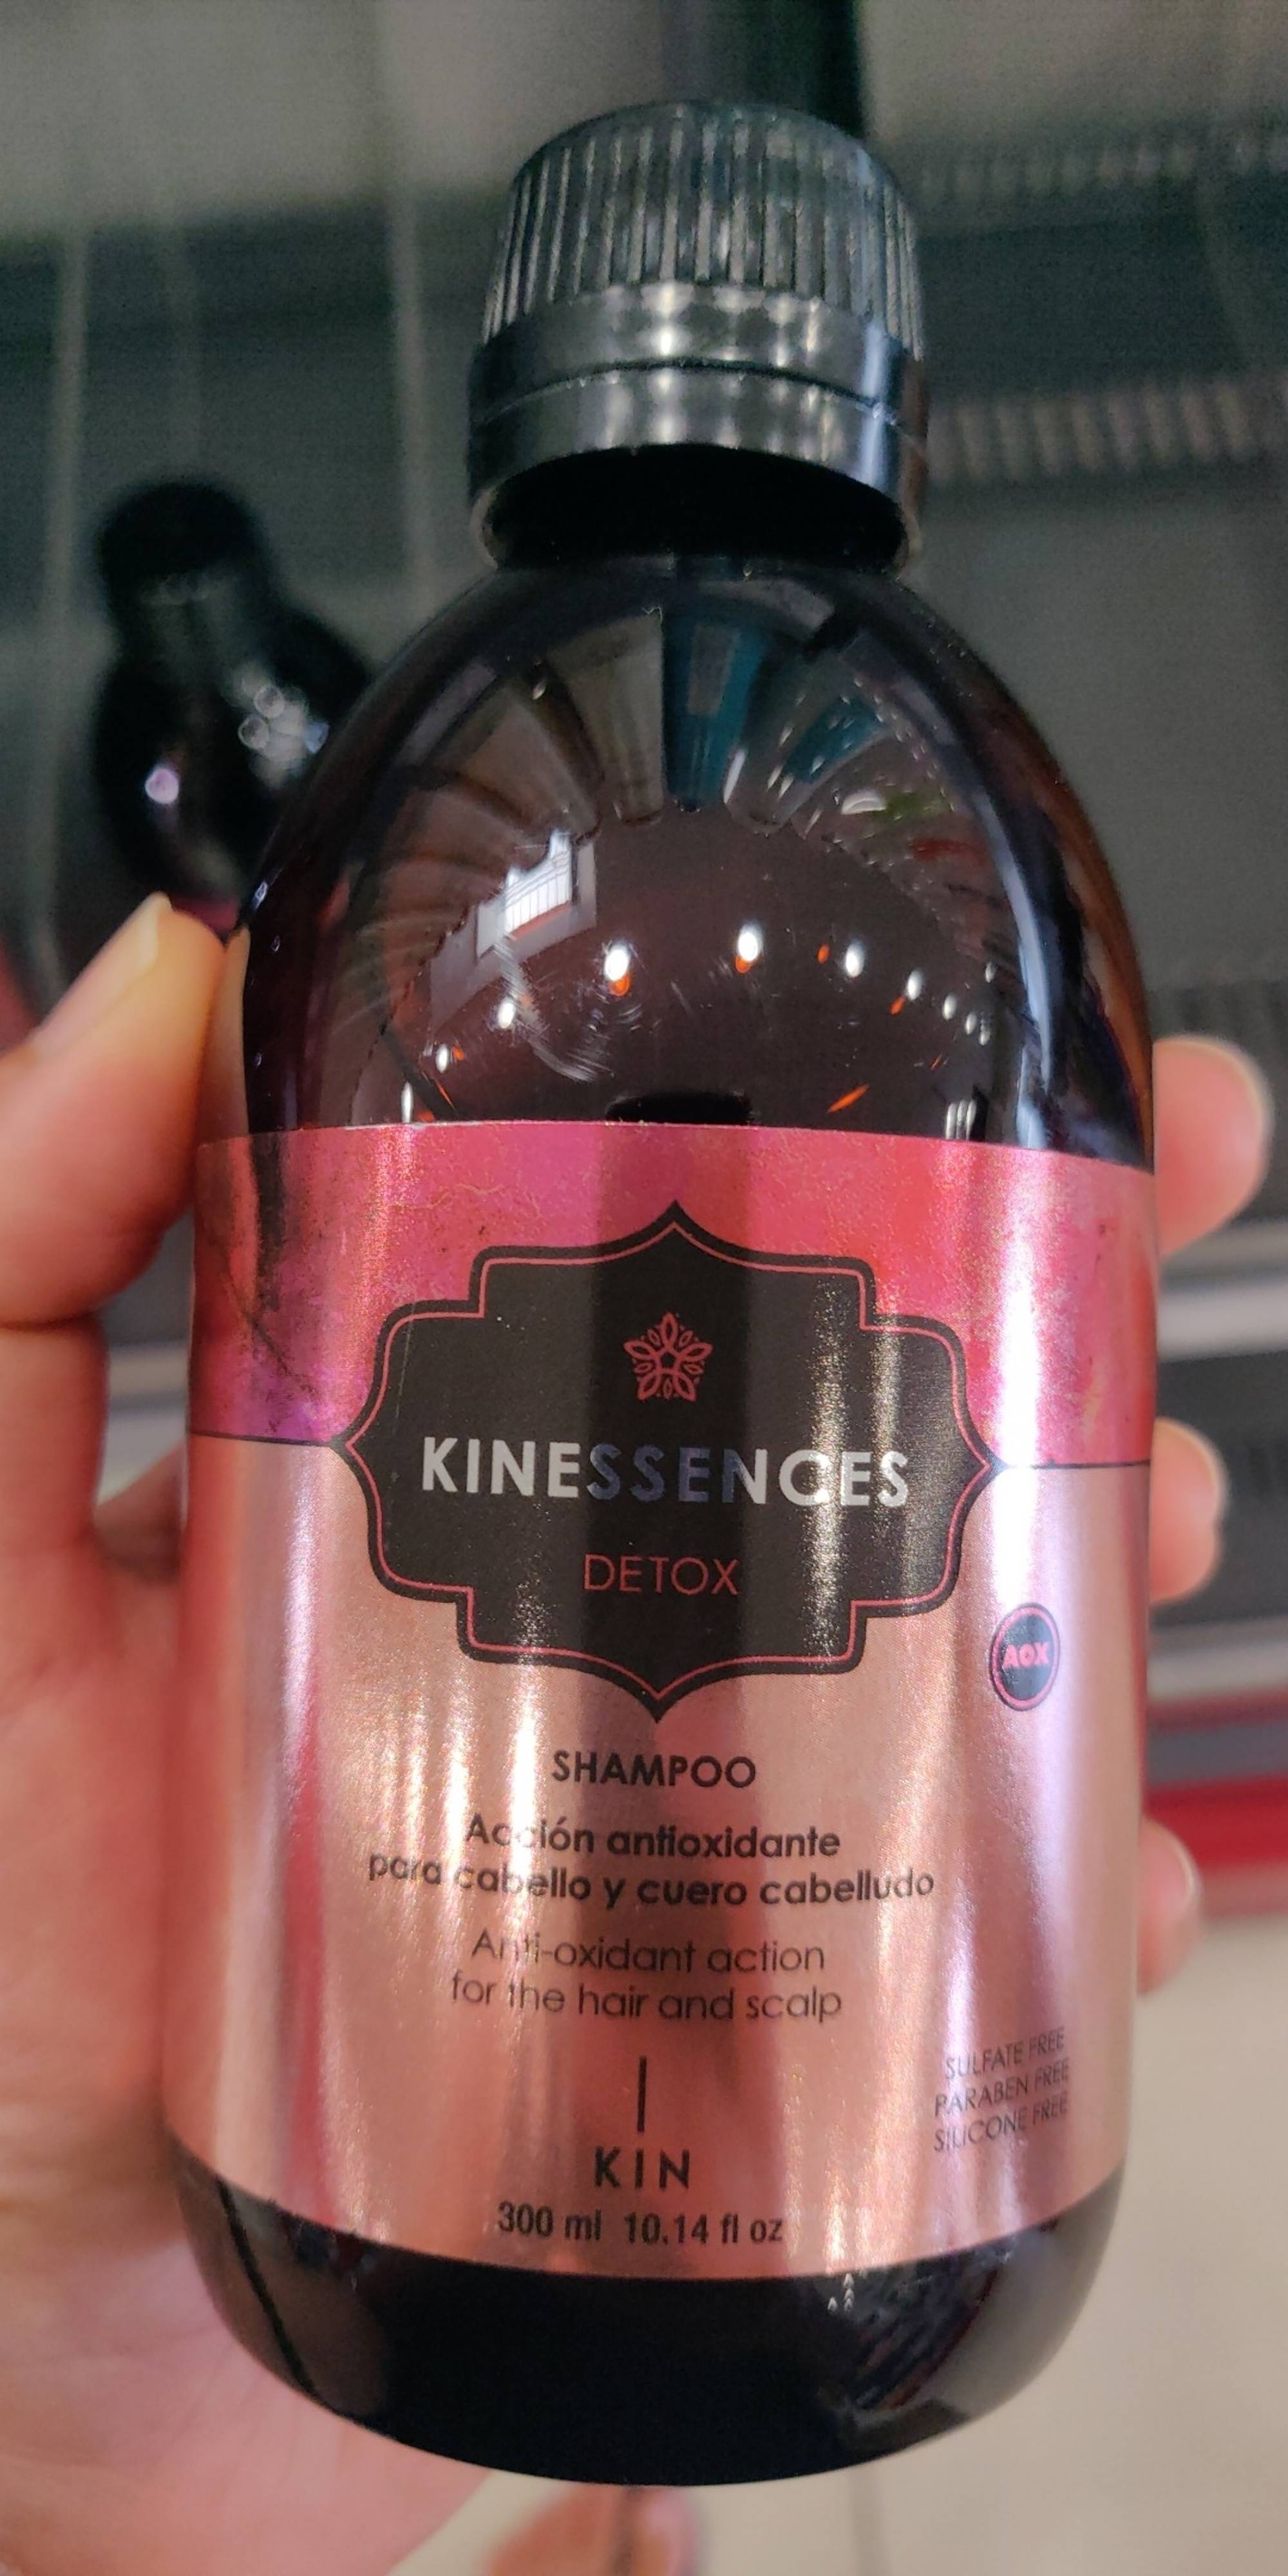 KIN COSMETICS - Kinessences Detox - Shampoo